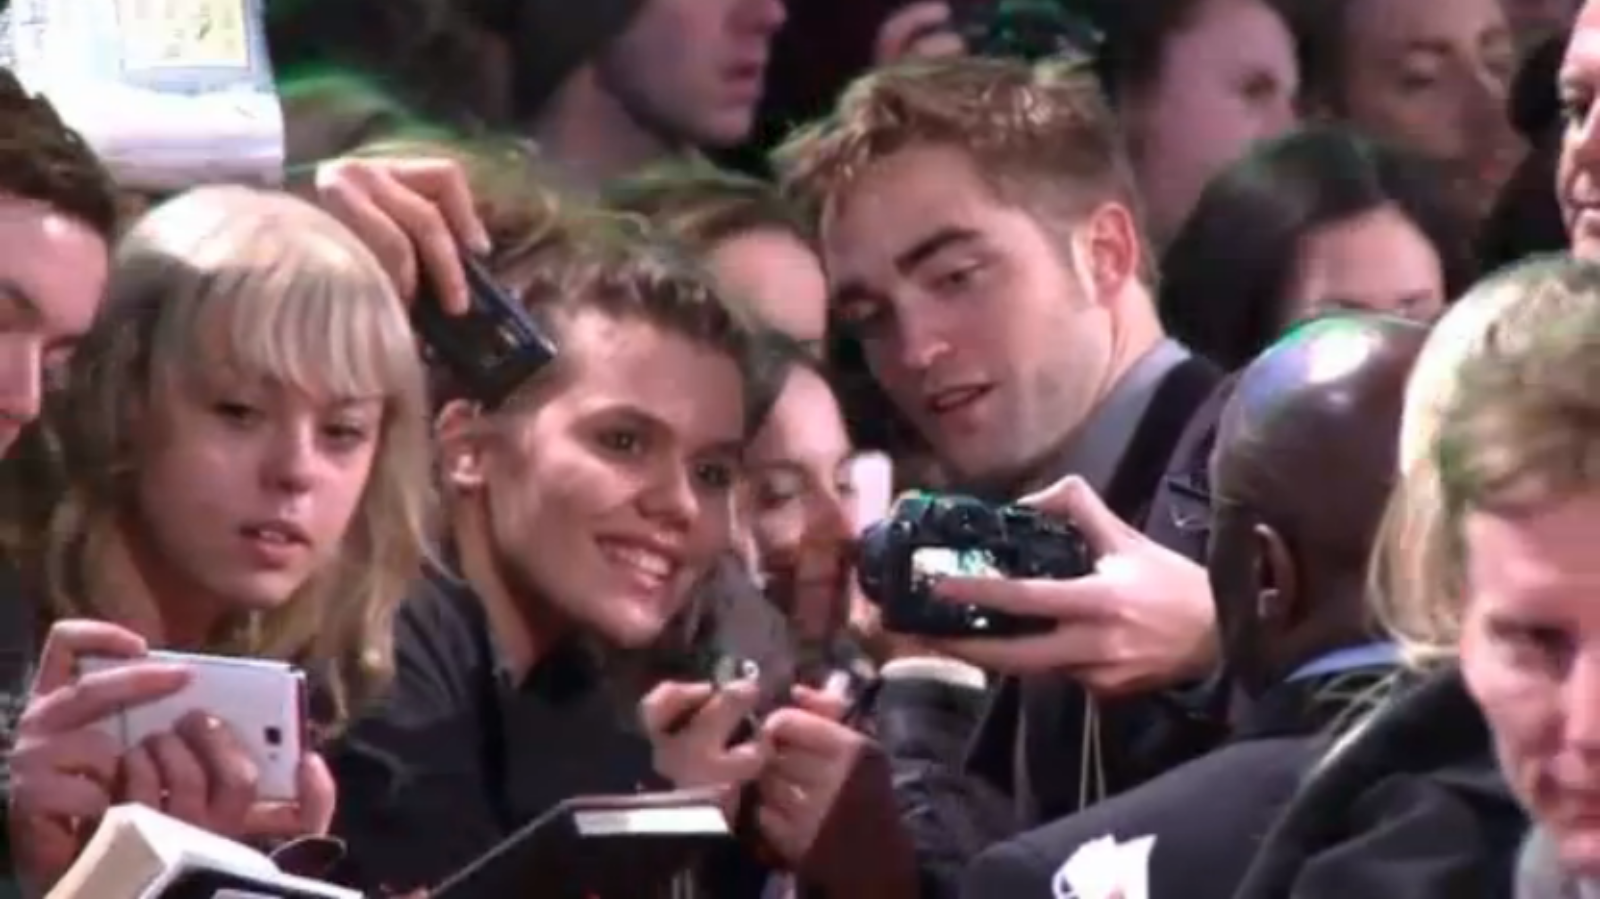 http://3.bp.blogspot.com/--jRiucQP5Yk/UKS3HyQQroI/AAAAAAAASxQ/zEnUxZUgvUM/s1600/Kristen+Stewart,+Robert+Pattinson+And+Taylor+Lautner+Attend+The+Twilight+Premiere+In+London+3.png